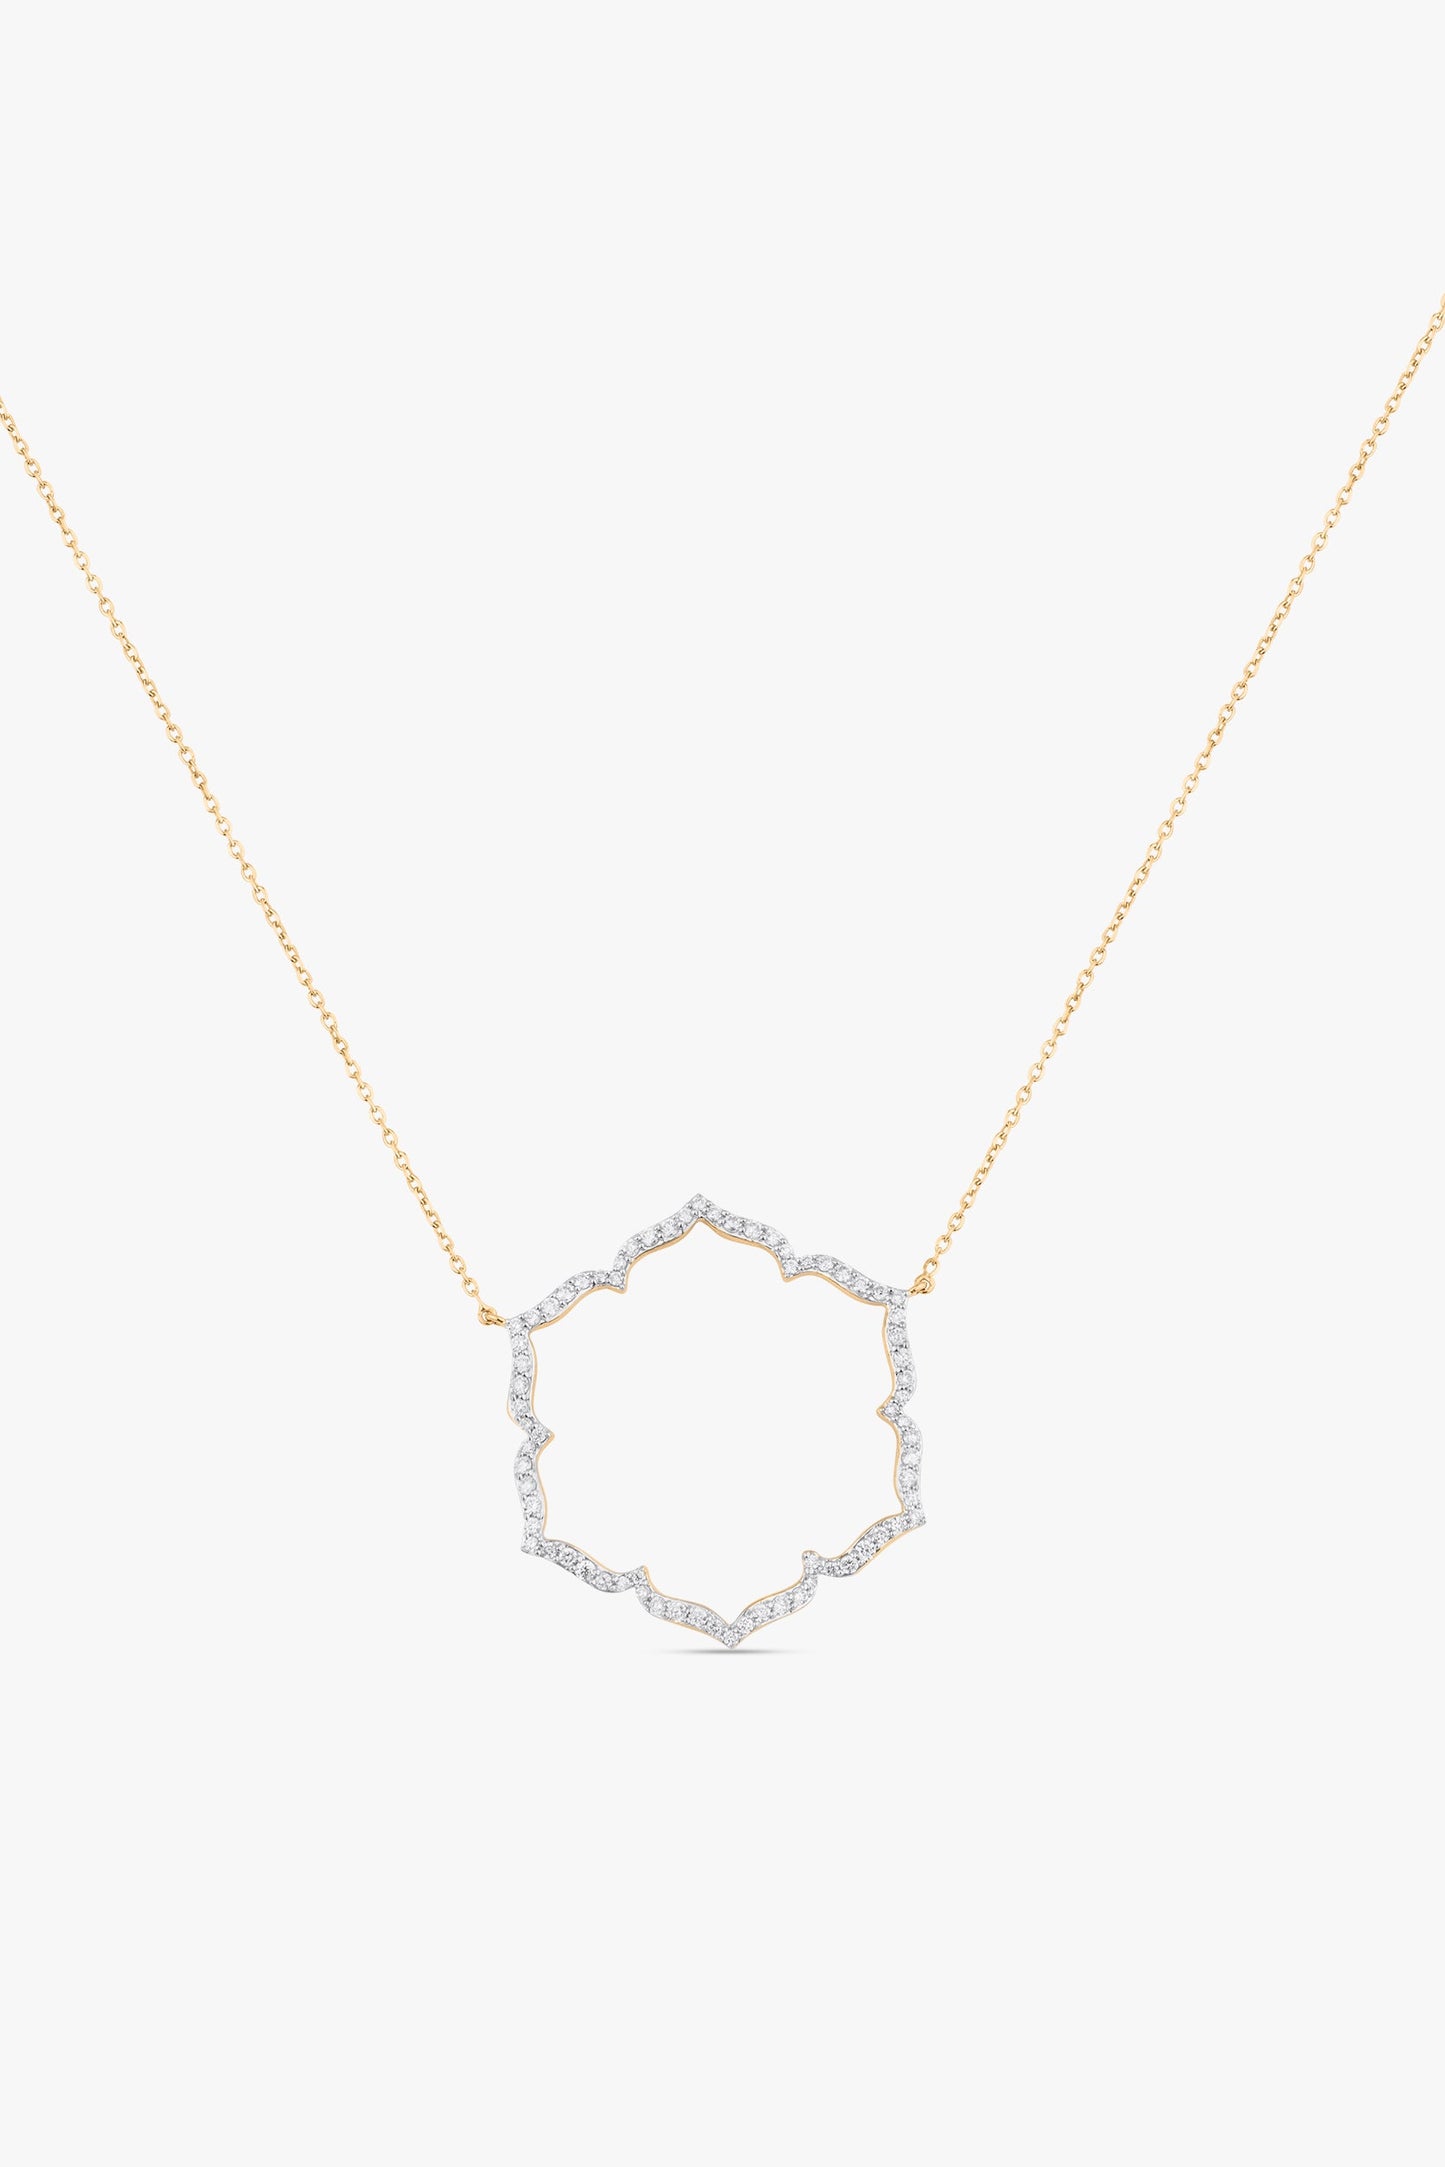 Svadhisthana Small Necklace